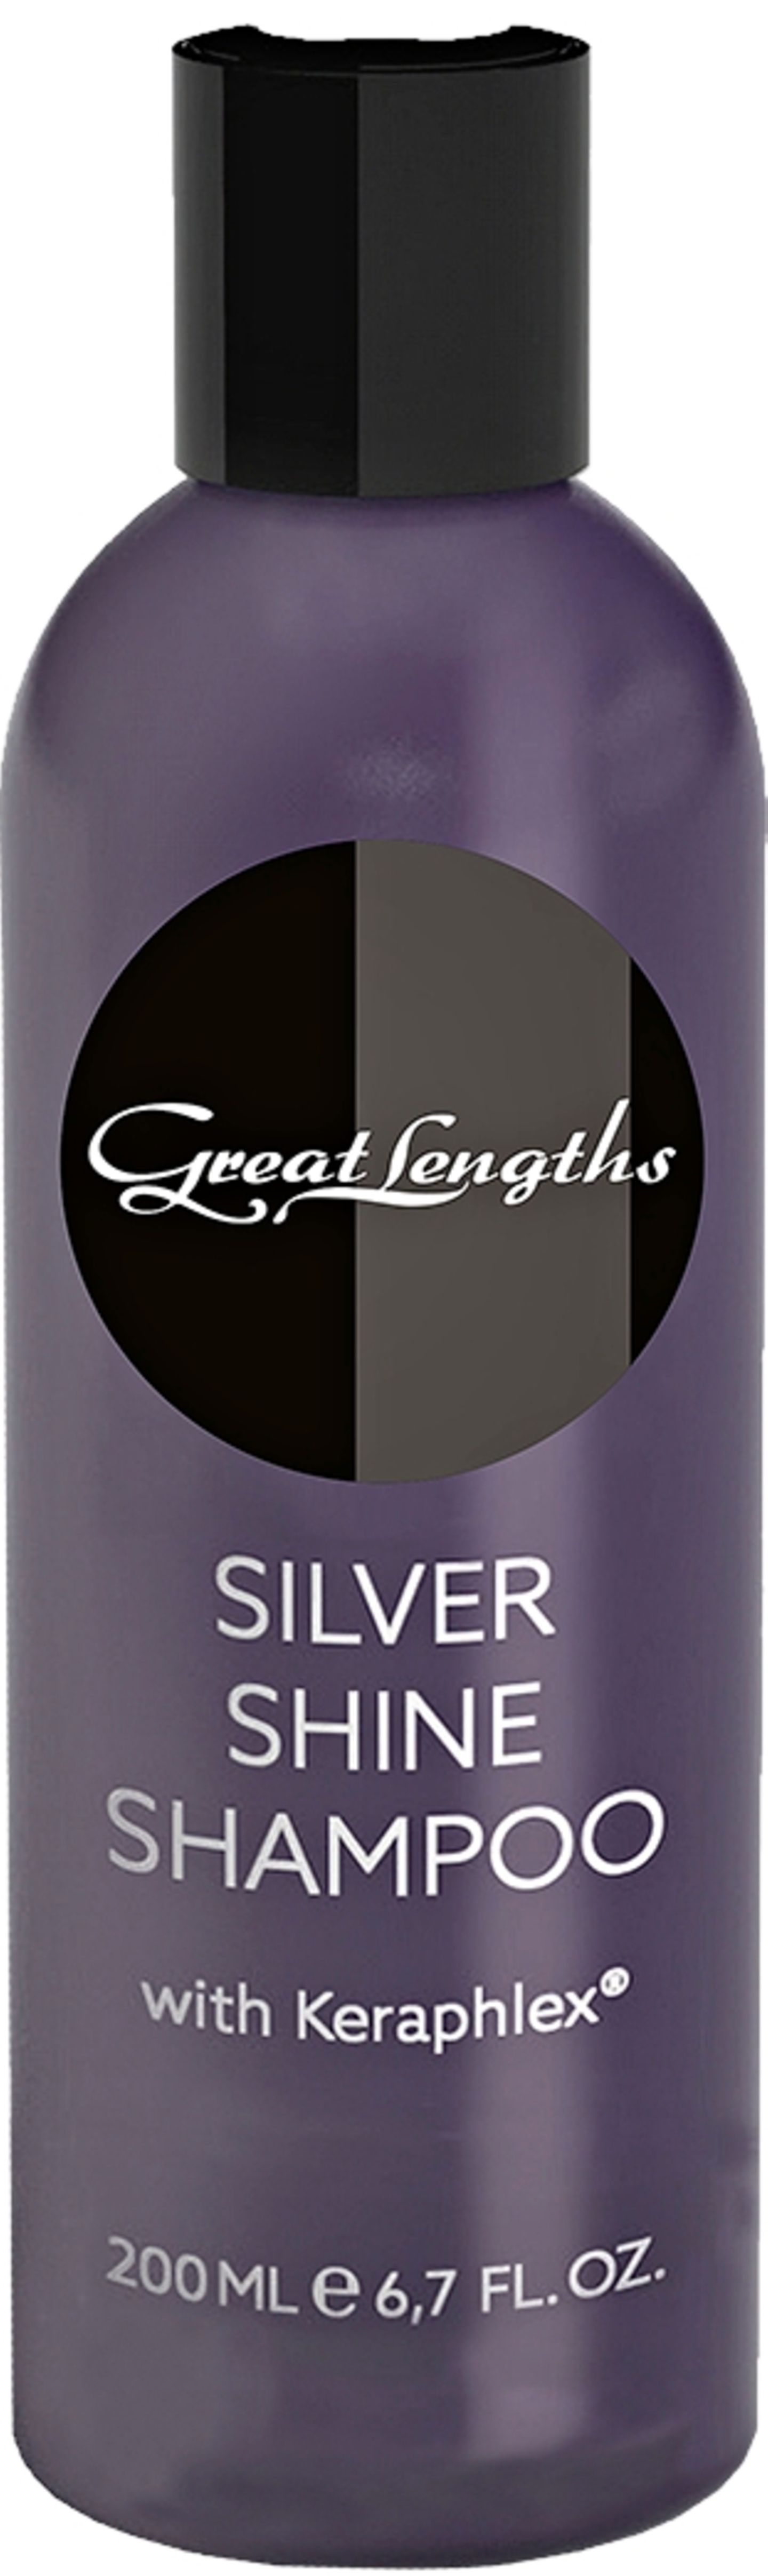 "Silver Shine Shampoo" von Great Lengths neutralisiert mit Kera-Protect-Komplex. 200 ml, ca. 19 Euro.